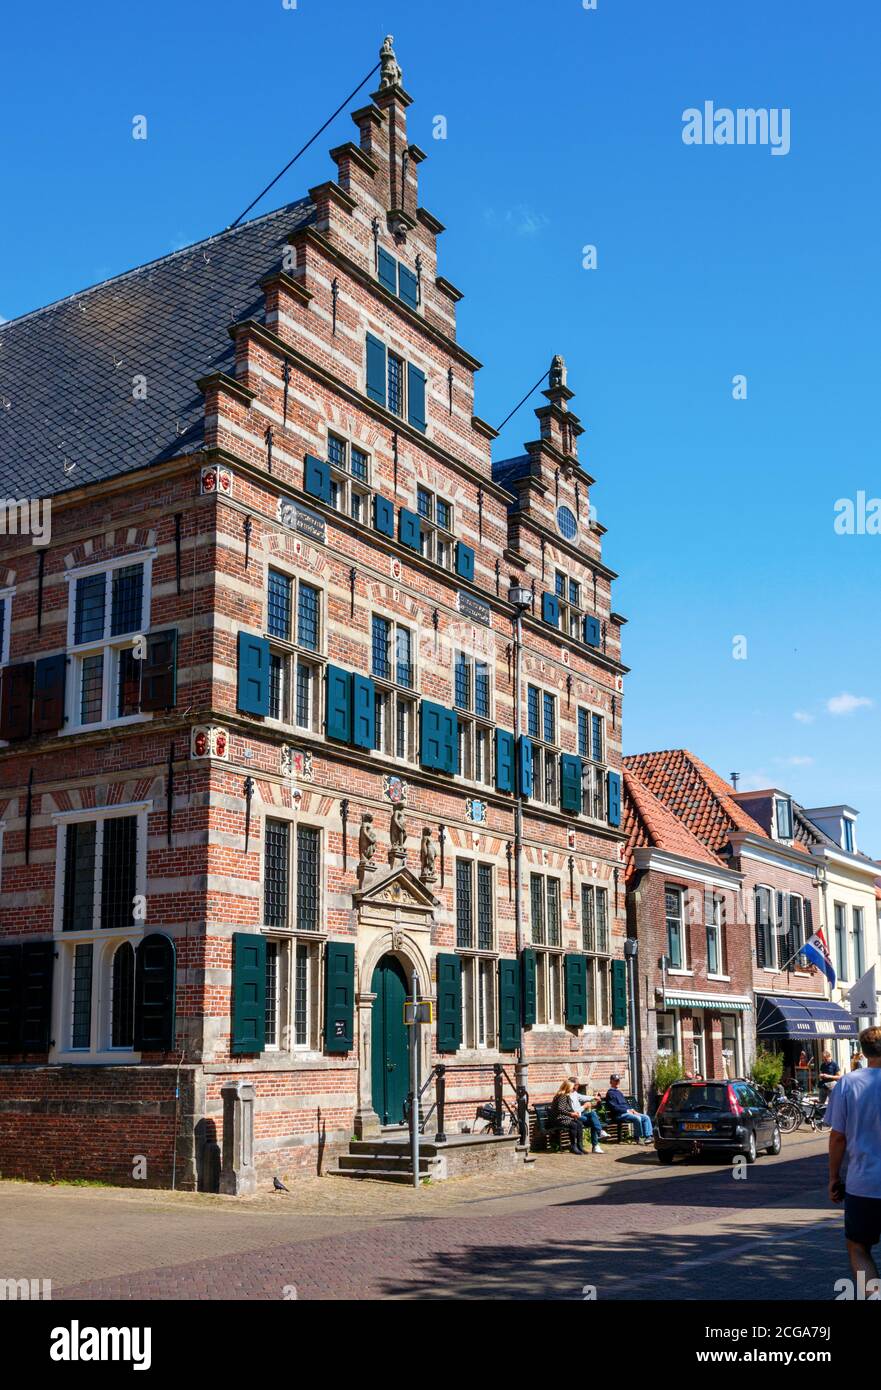 Marktstraat, centro storico di Naarden. Il municipio medievale di Marktstraat in una giornata di sole. Nord Olanda, Paesi Bassi. Foto Stock